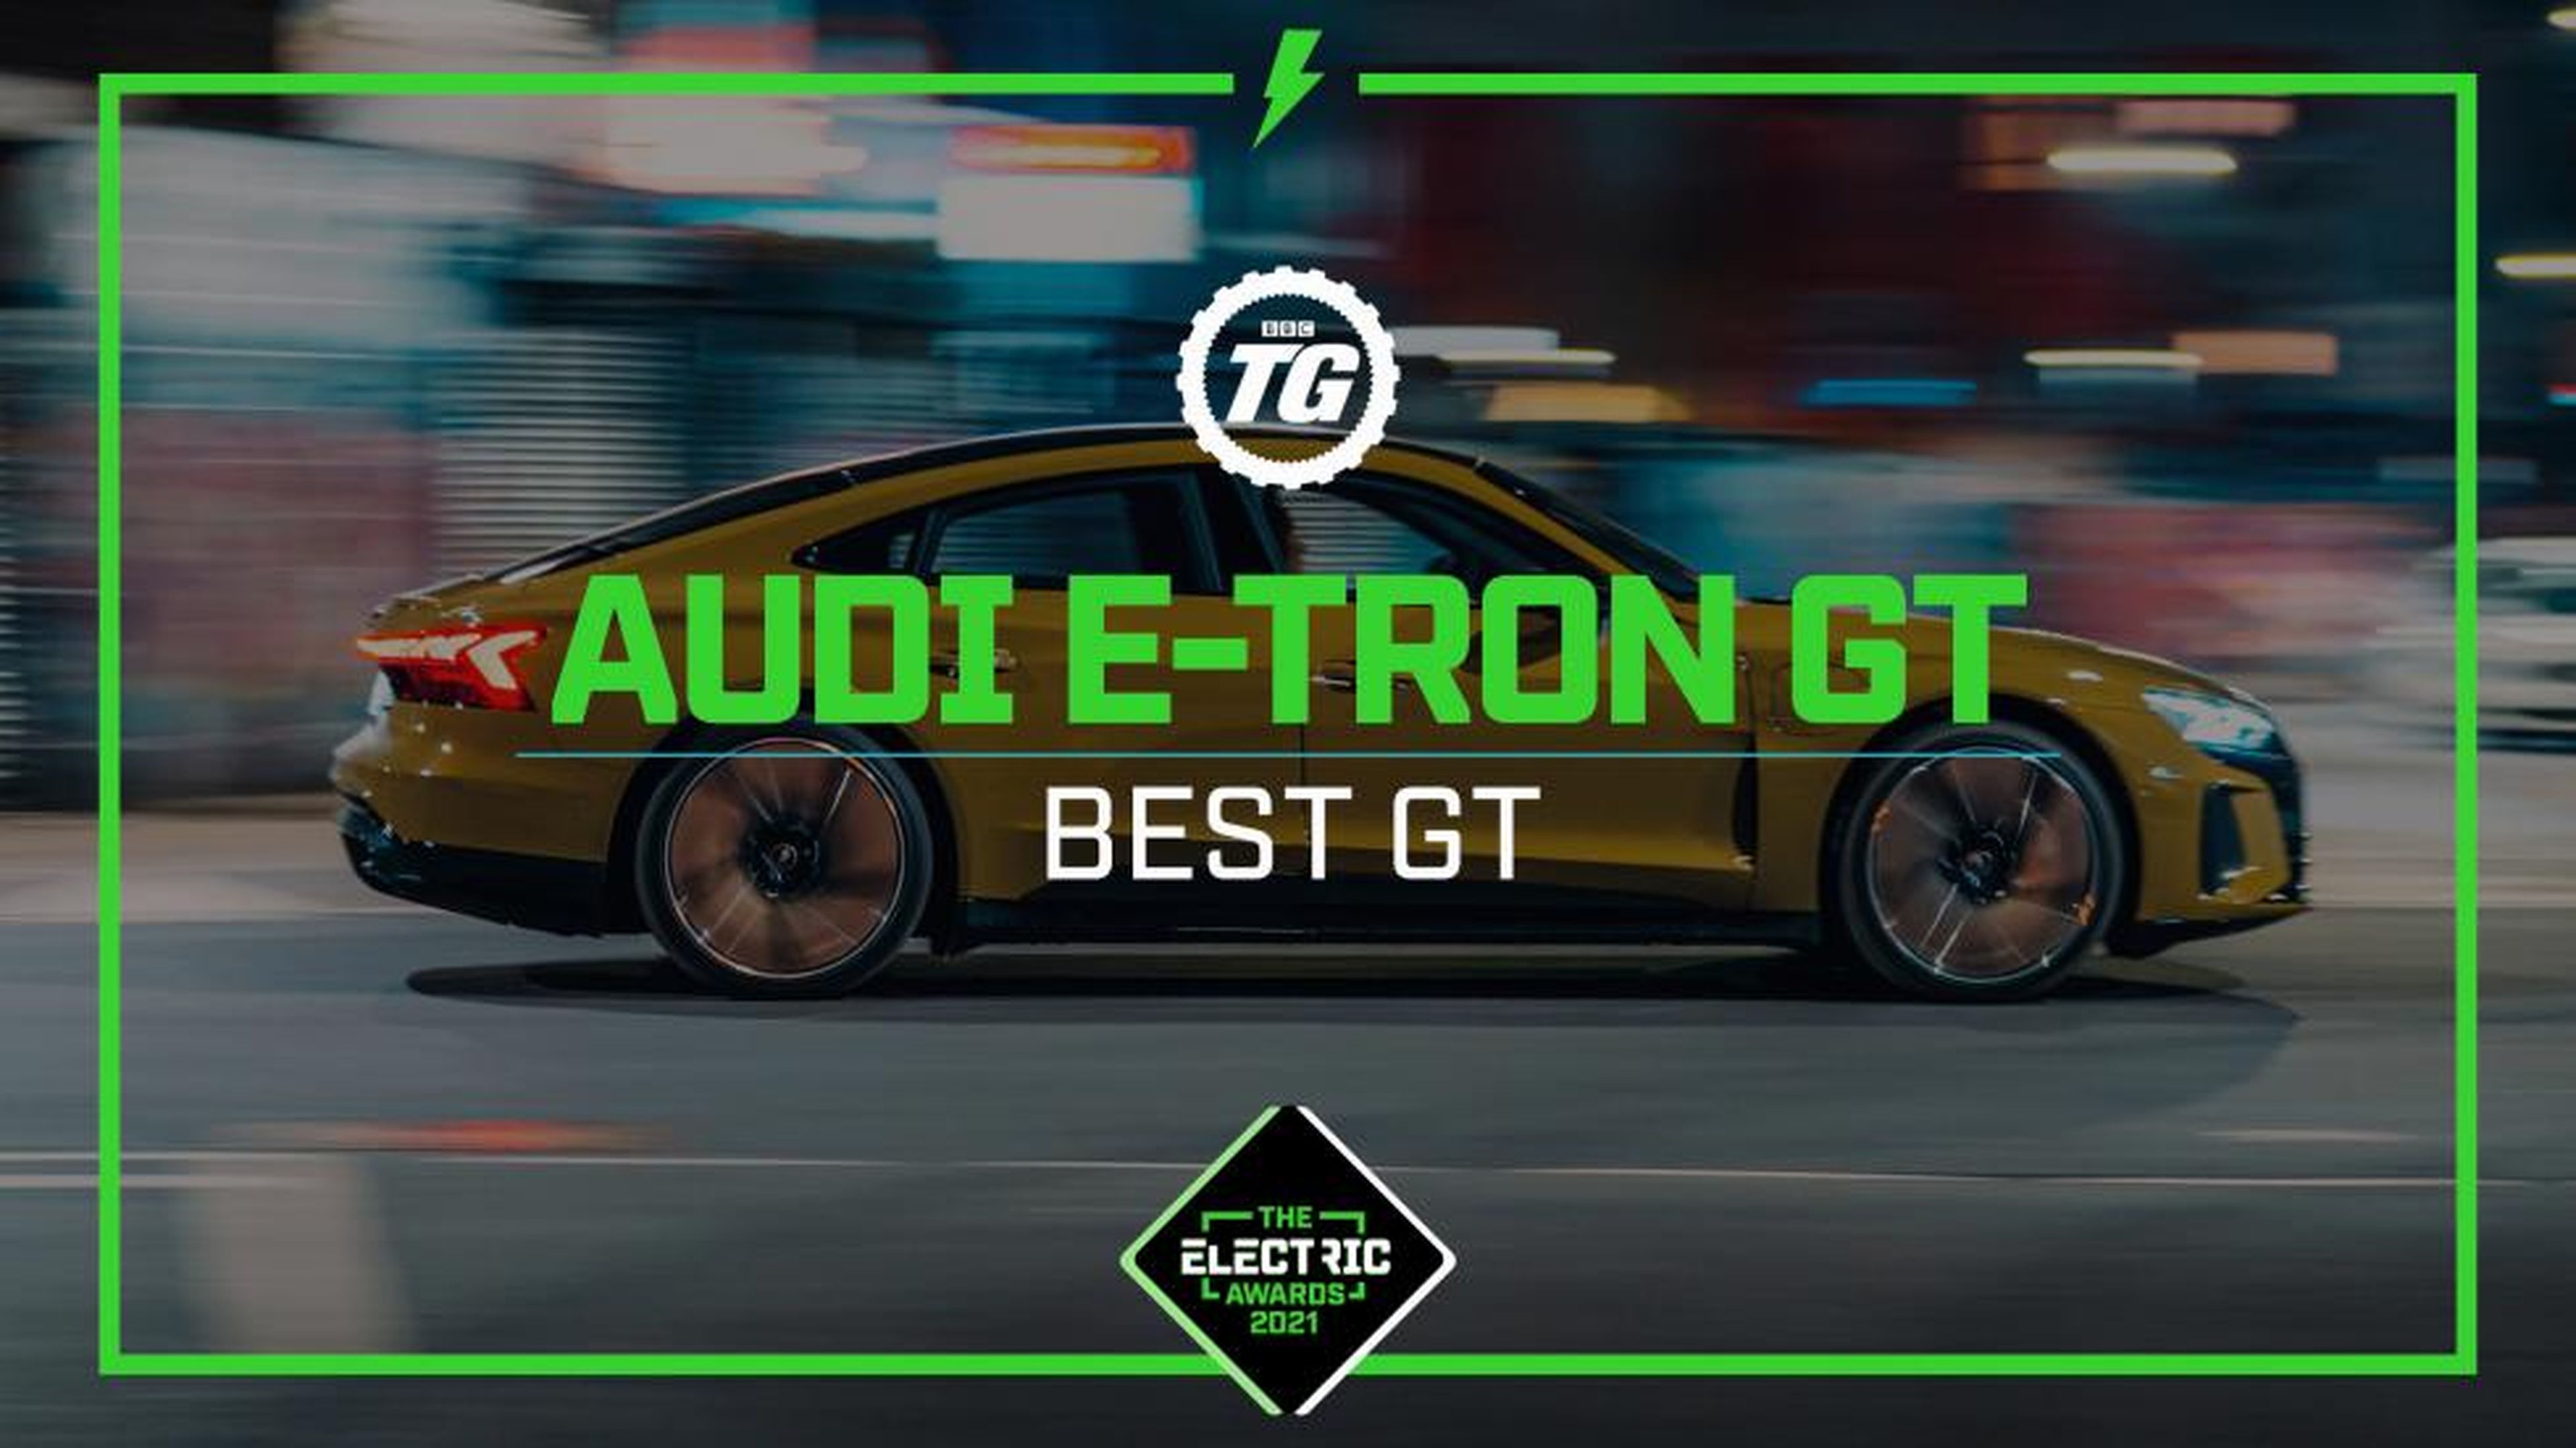 Top Gear Electric Awards: Auto e-Tron